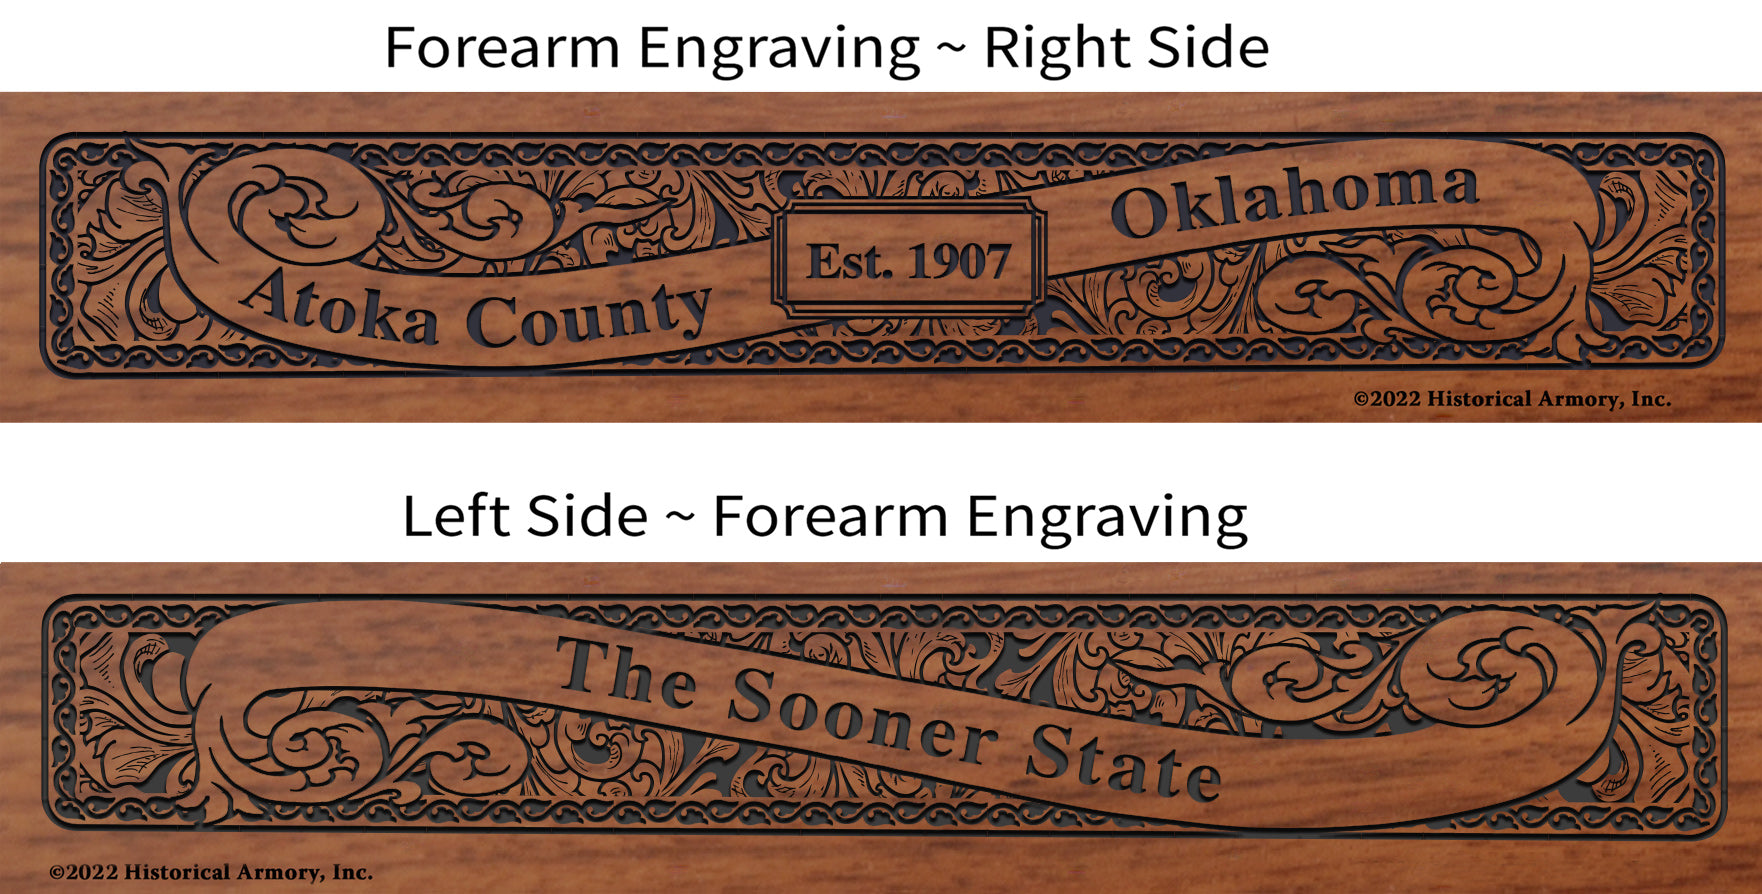 Atoka County Oklahoma Engraved Rifle Forearm